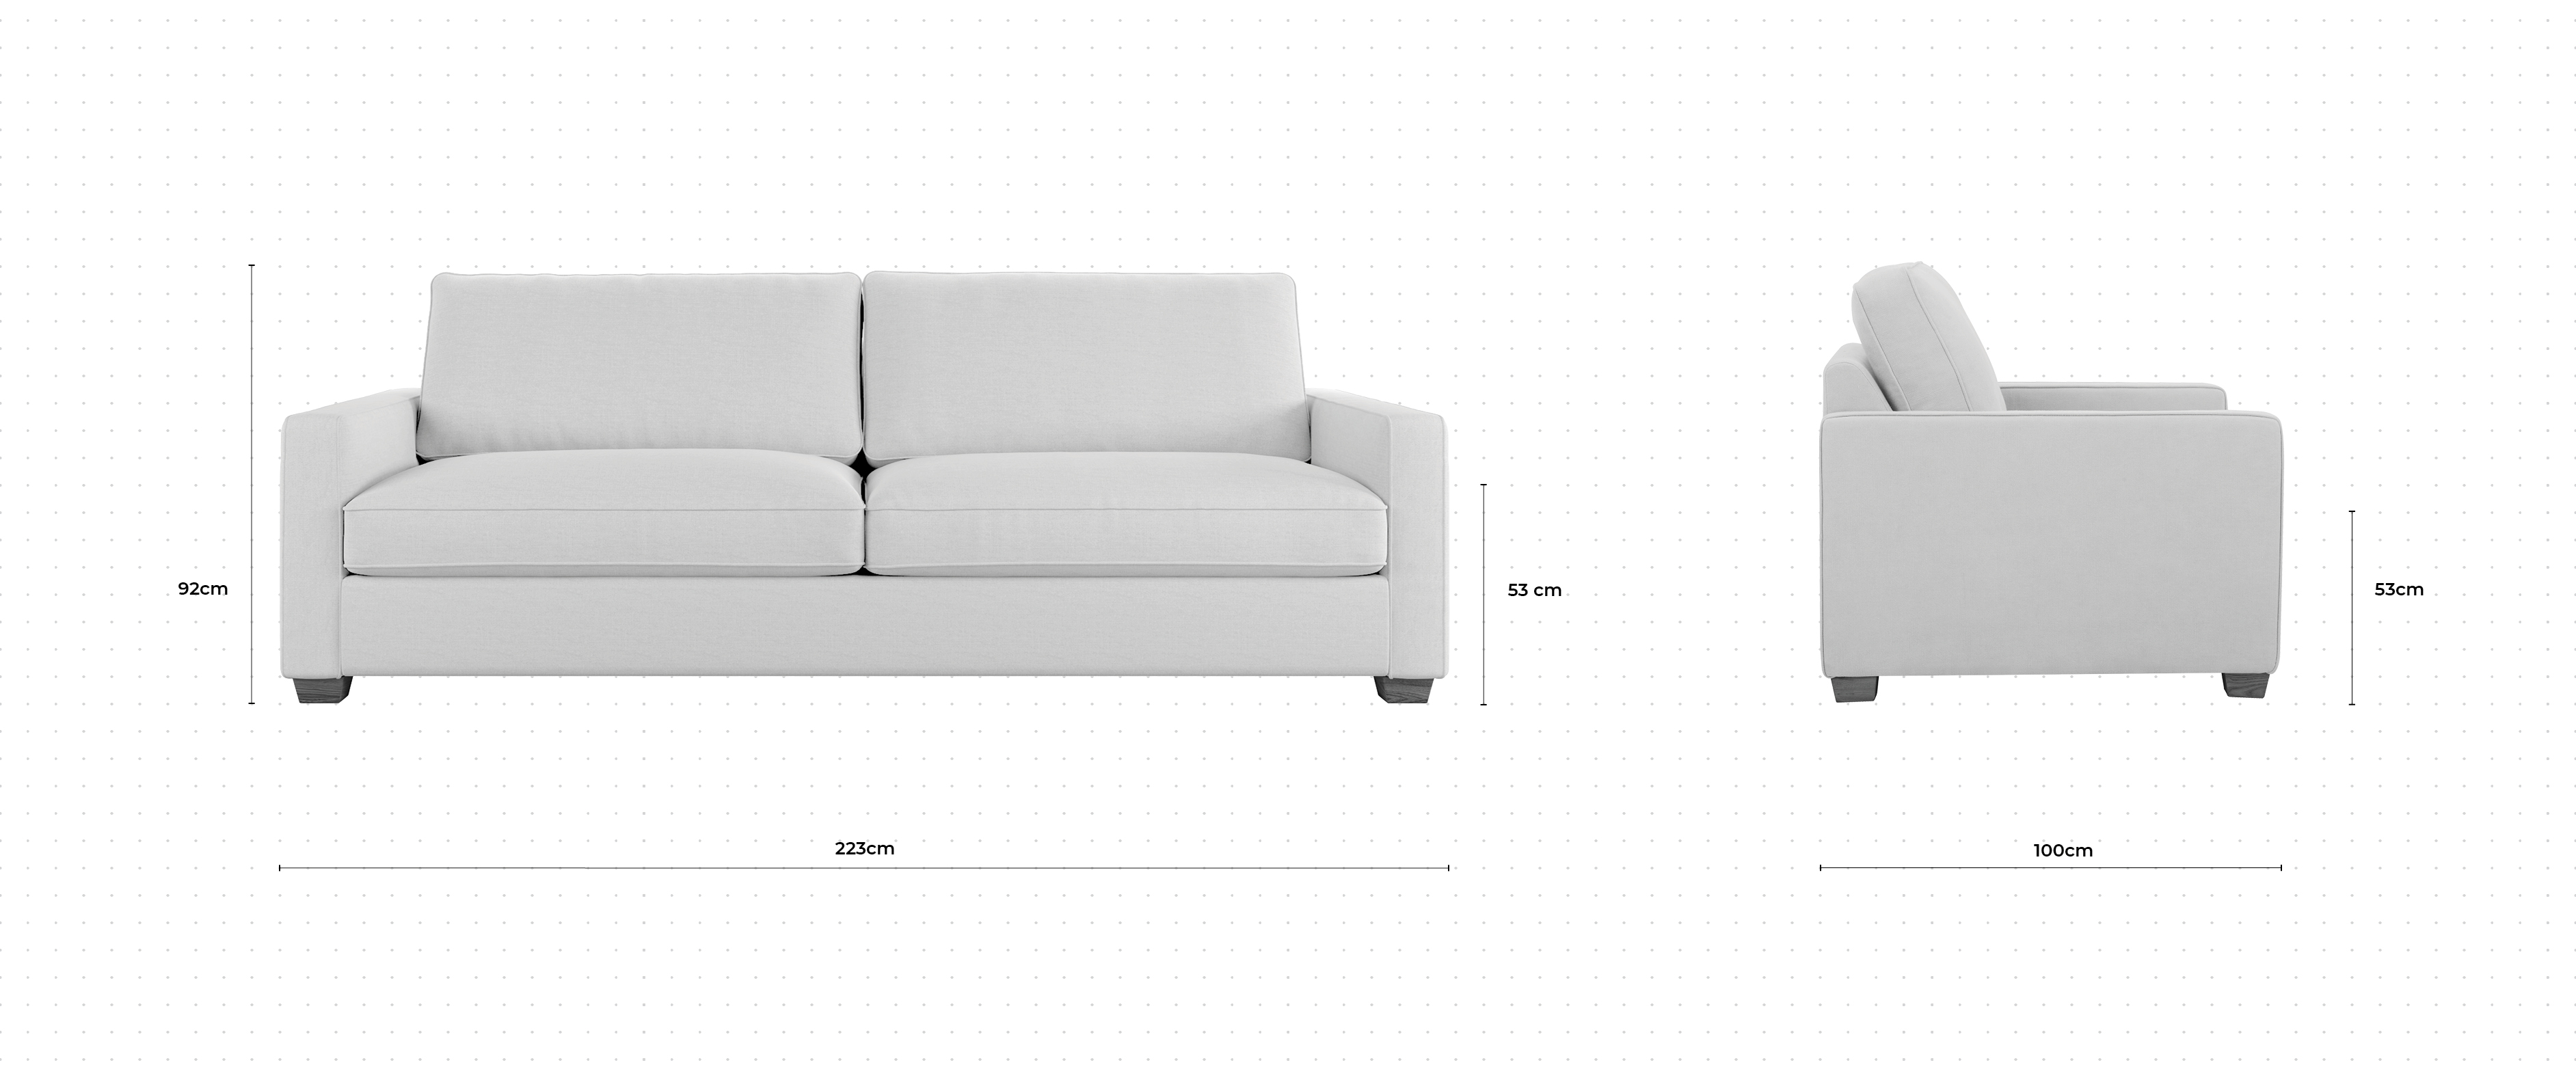 Blake 3 Seater Sofa dimensions